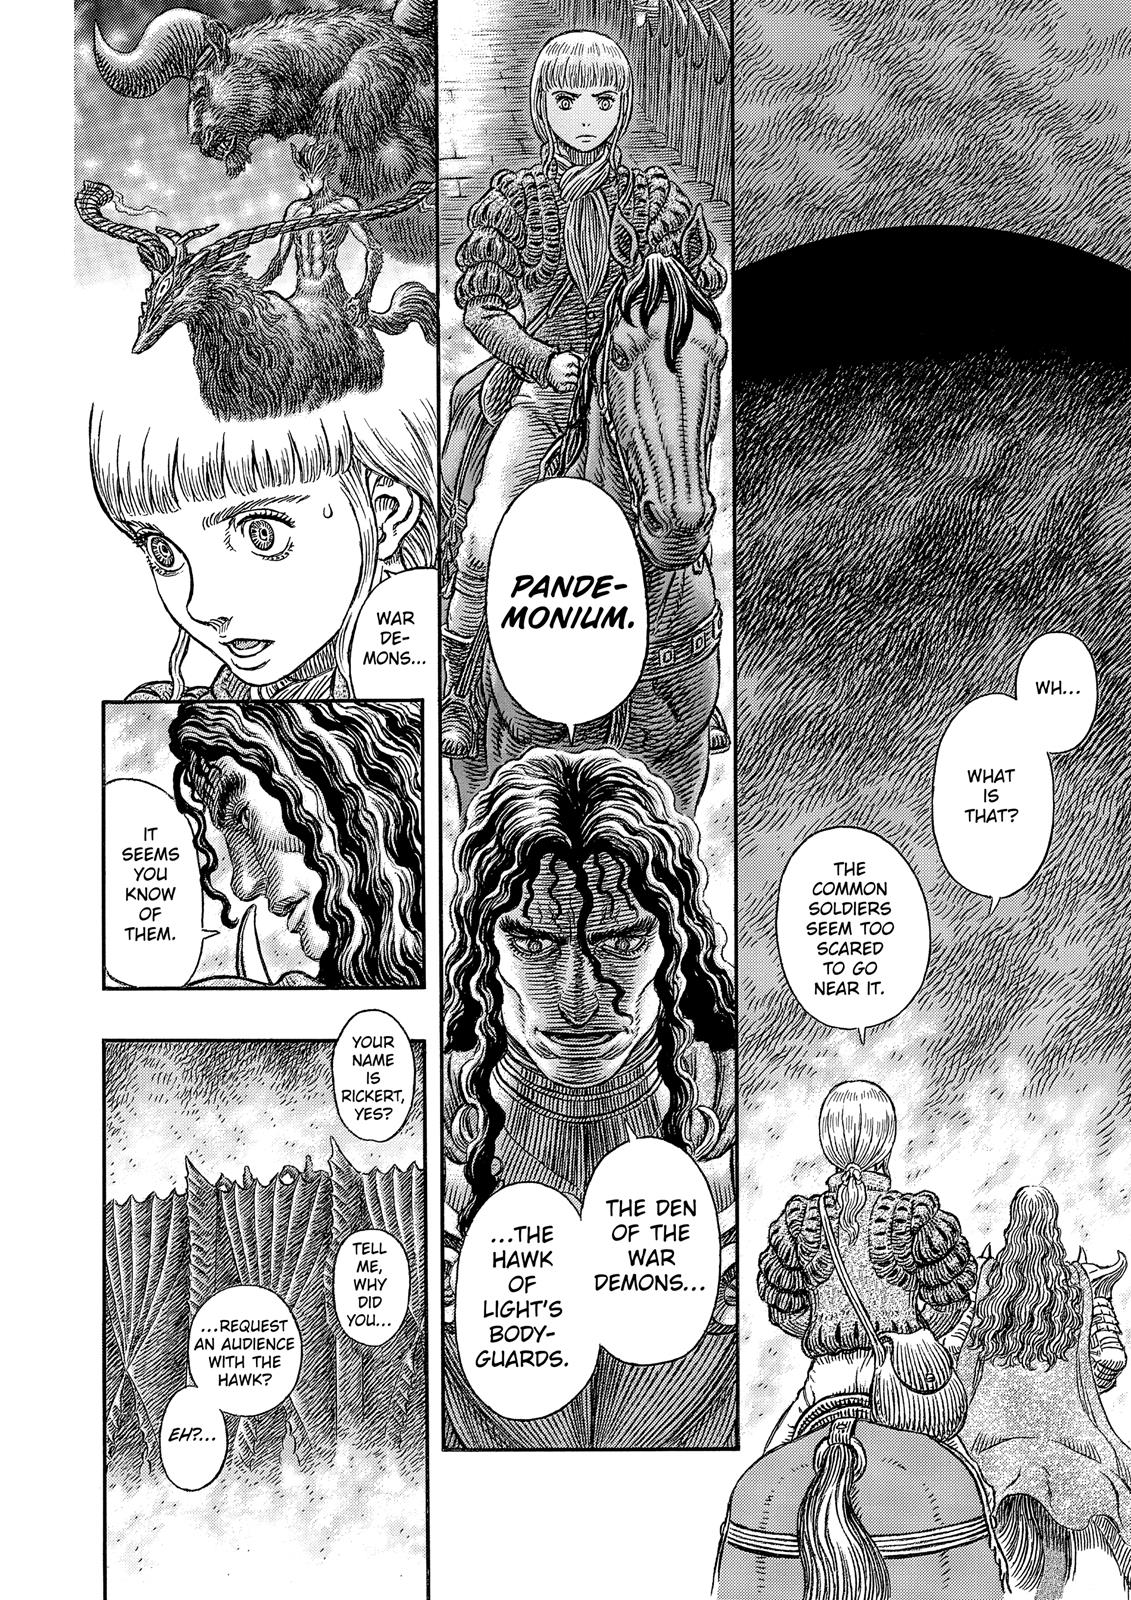 Berserk Manga Chapter 336 image 06